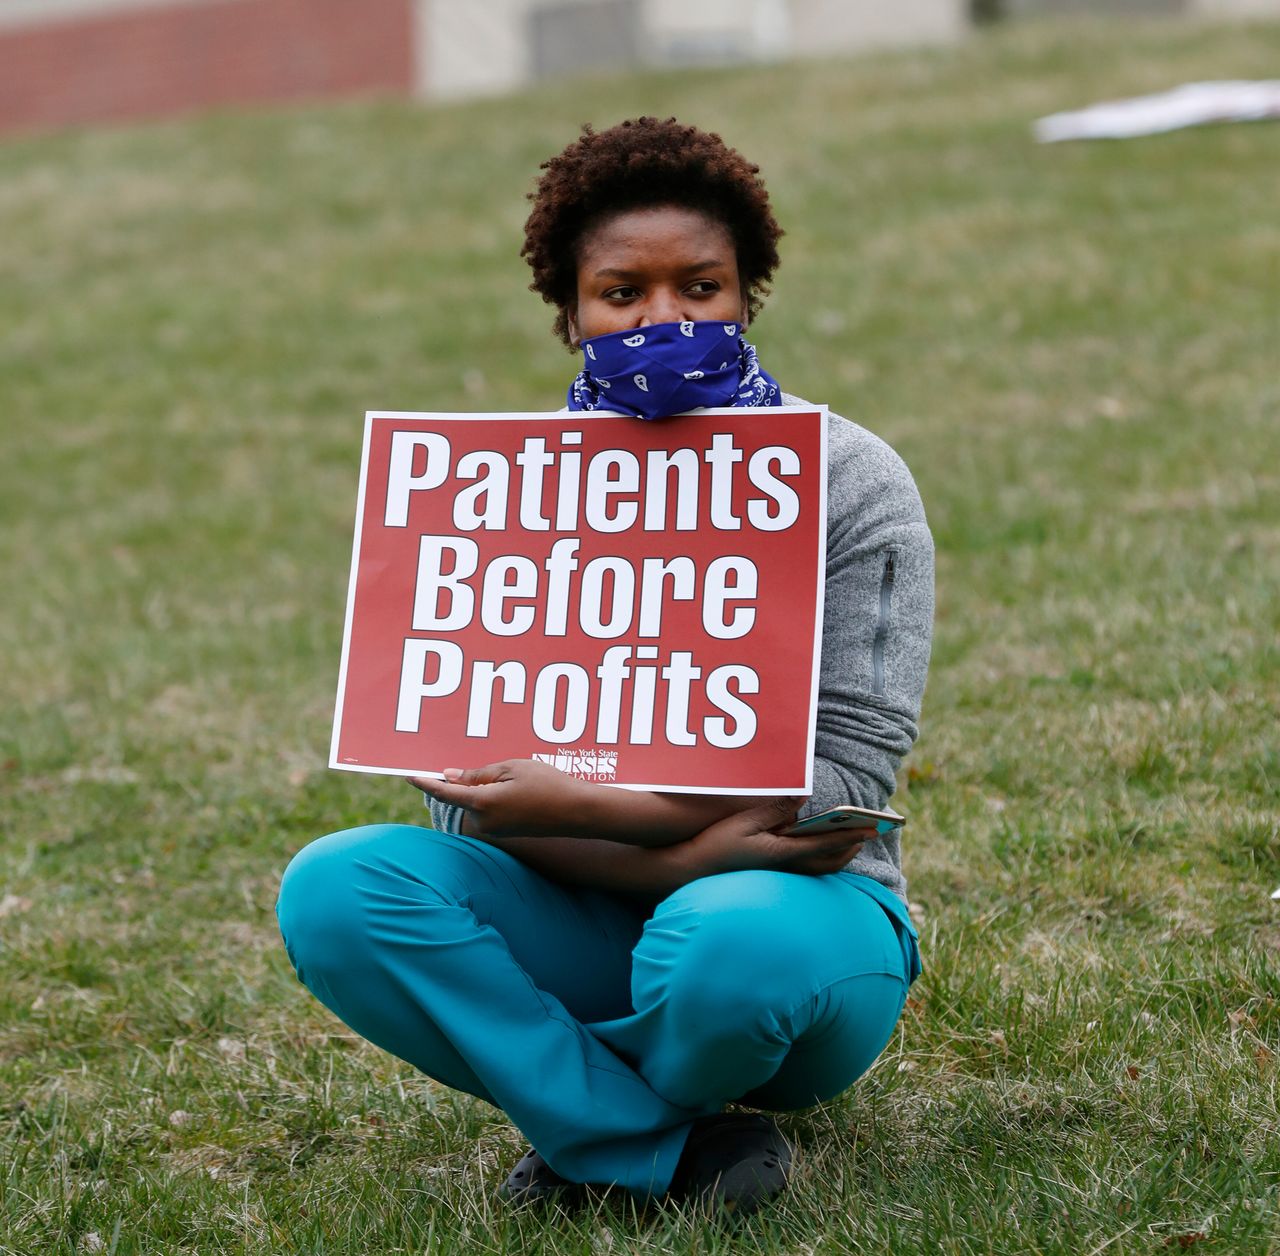 Φωτογραφία από τη διαμαρτυρία νοσοκόμων σε Κέντο Υγείας του Μπρονξ. Οι νοσηλευτές ζητούν προστατευτικό εξοπλισμό και εκφράζουν ανησυχία για την τύχη ασθενών που δεν έχουν ιατροφαρμακευτική κάλυψη. 